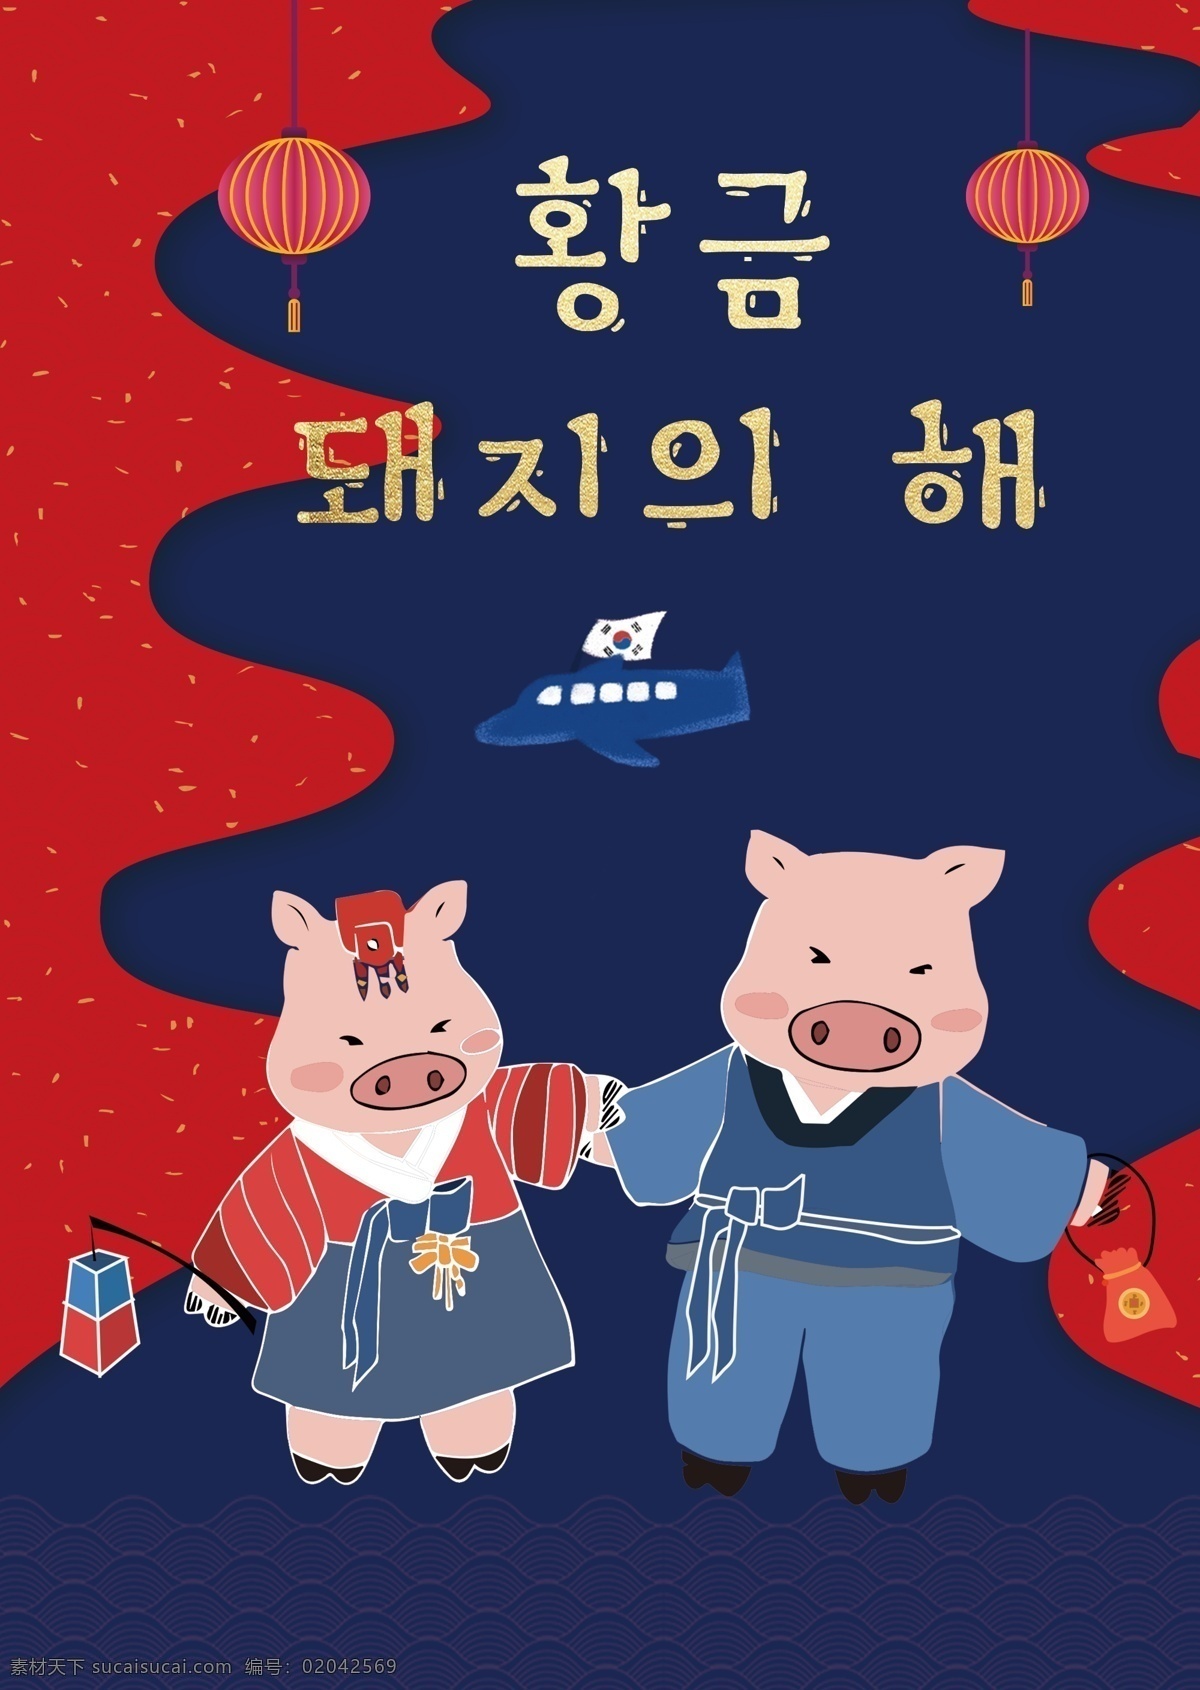 2019 年 传统 韩国 猪 海报 肝脏药物 灯笼 节 袋 祝你新年快乐 动画片 模板 蓝色 韩国新的一年 春节 韩国风格 移动支付 传统的海报 韩 复杂的纸袋